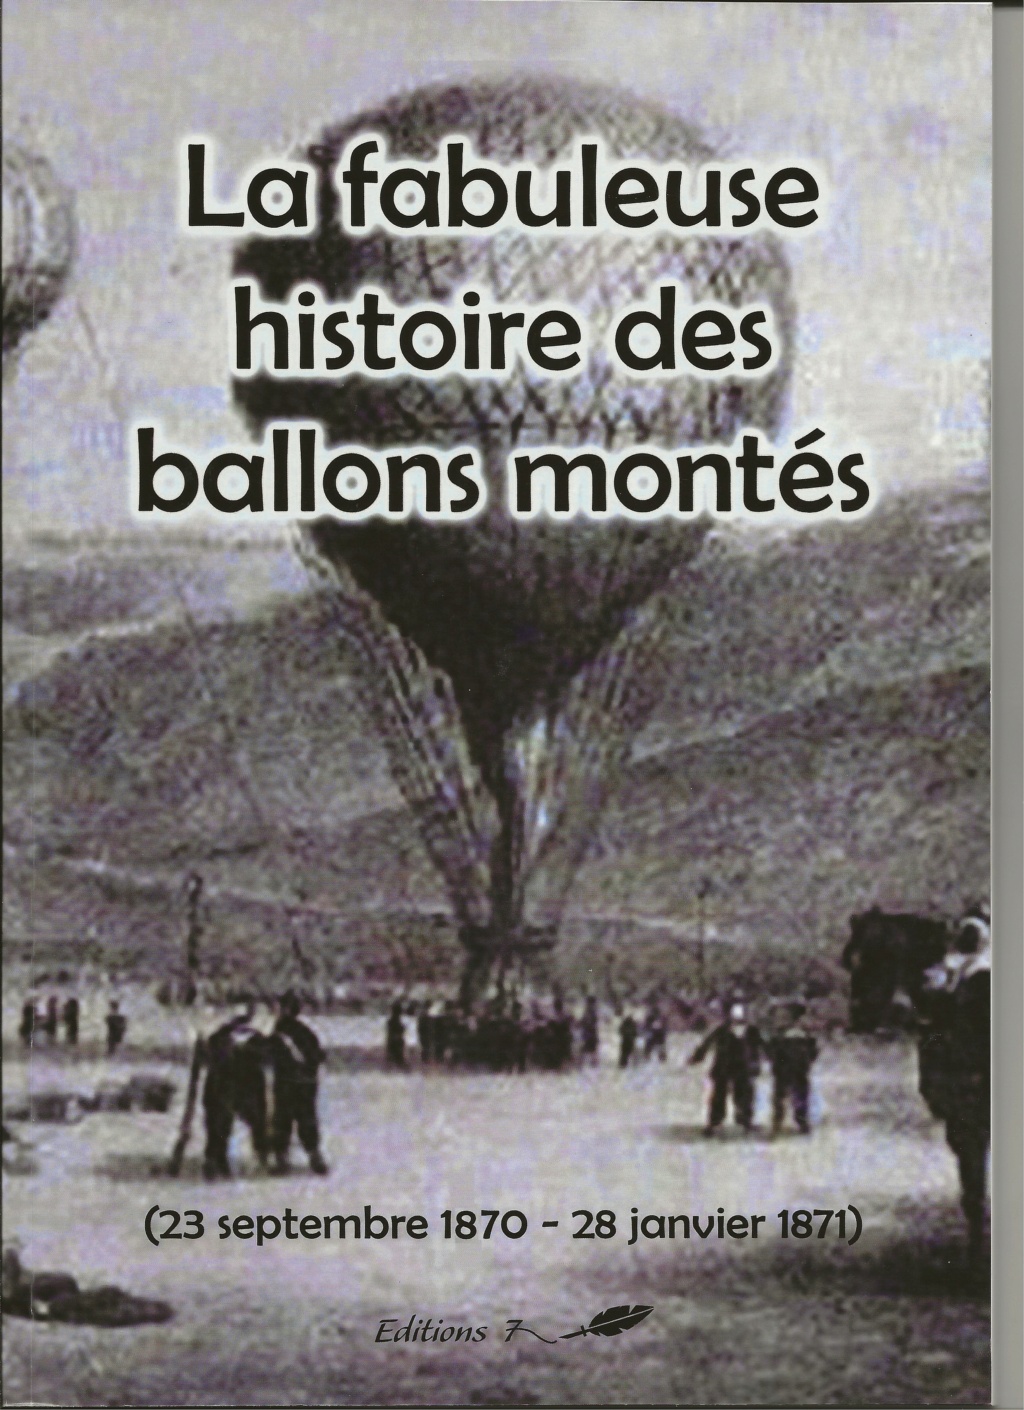 SIEGE DE PARIS 1870 "LES BALLONS MONTES" Les_ba10